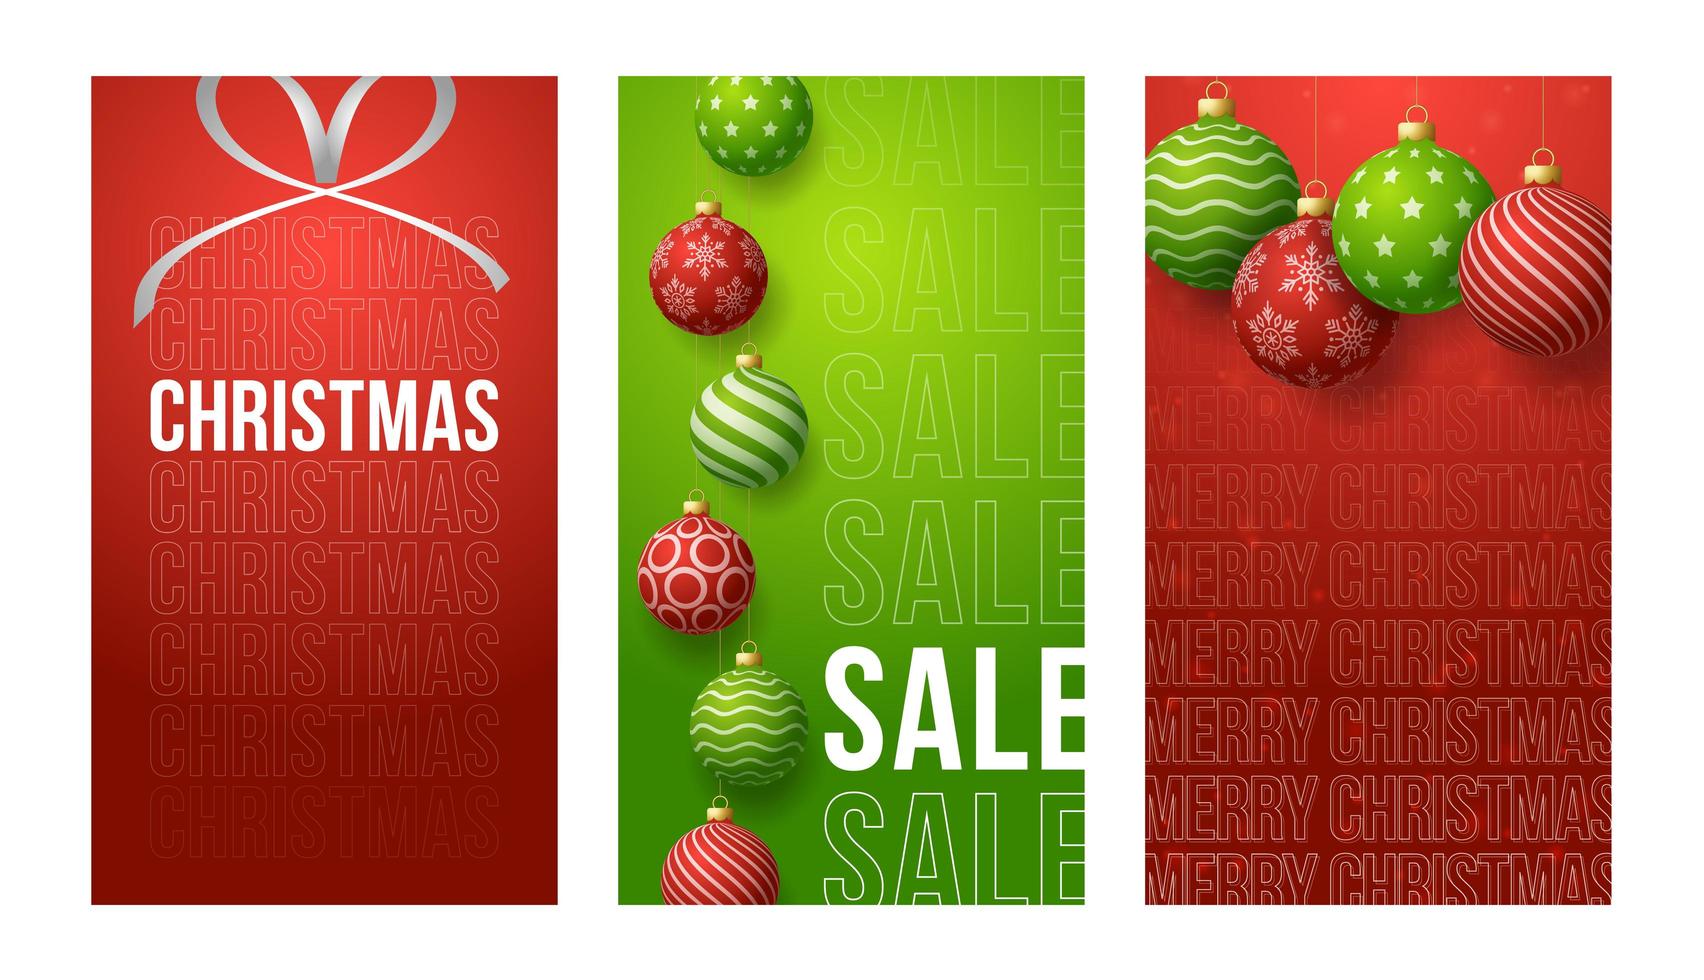 vrolijk kerstfeest verticale banner voor verhalen. rode en groene vector set van kerstthema sociale media verhalen post, 3D-realistische rode en groene bal banner voorbladsjabloon voor spandoek